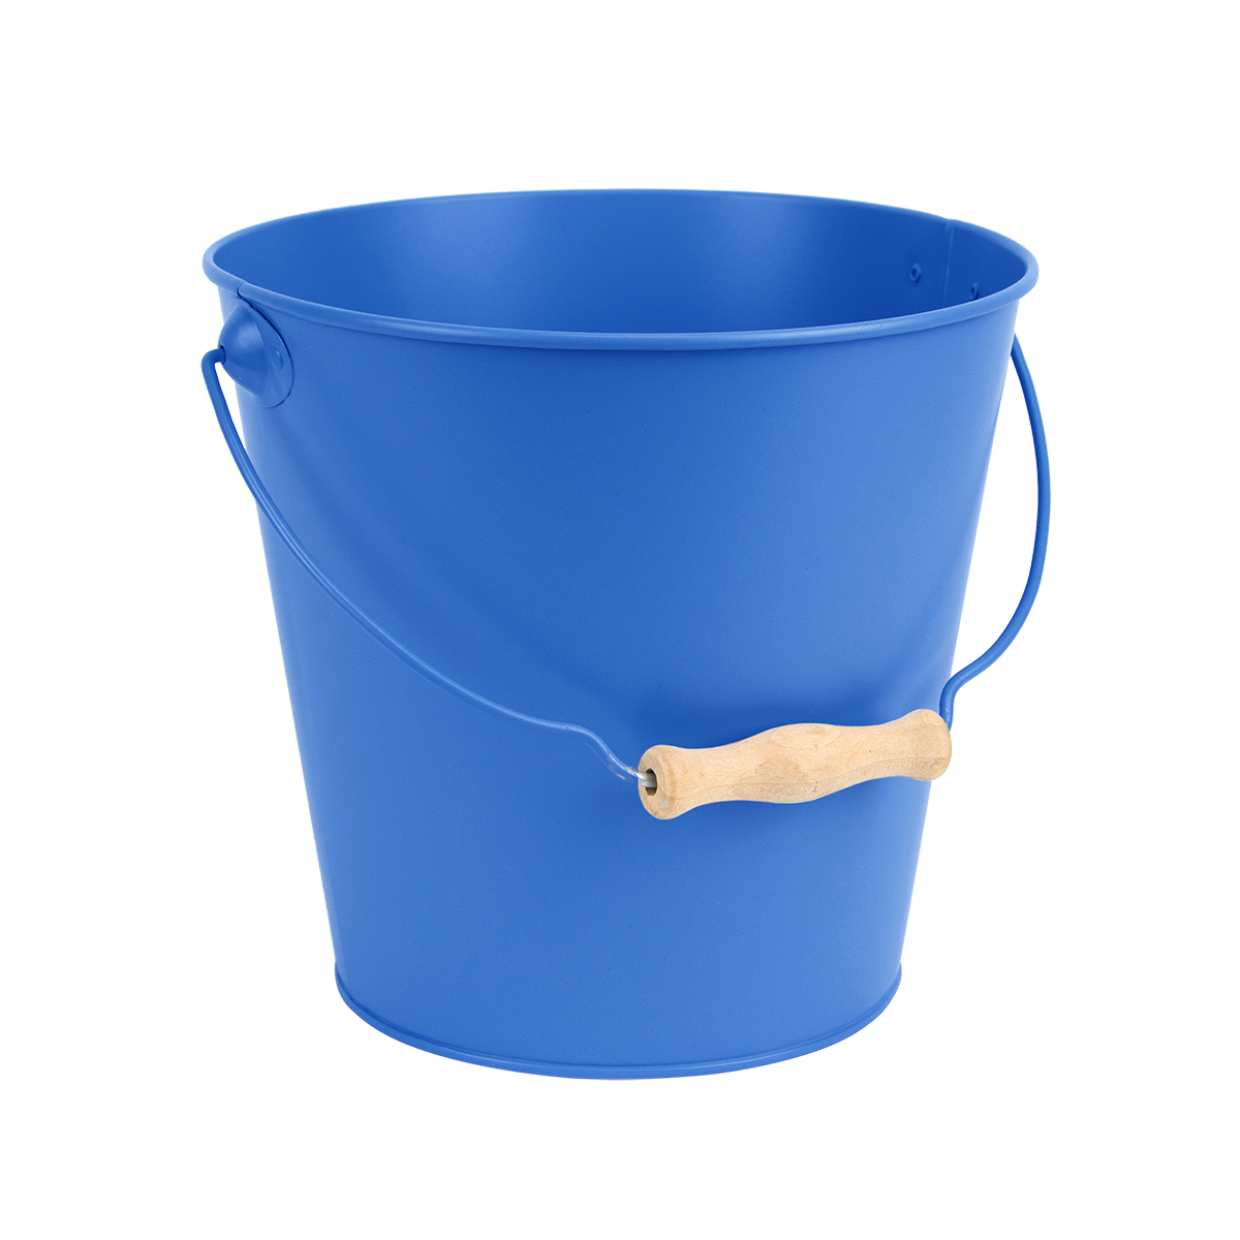 ESSCHERT DESIGN 'Blue Shades' 5L Bucket - Marine Blue **Limited Stock**